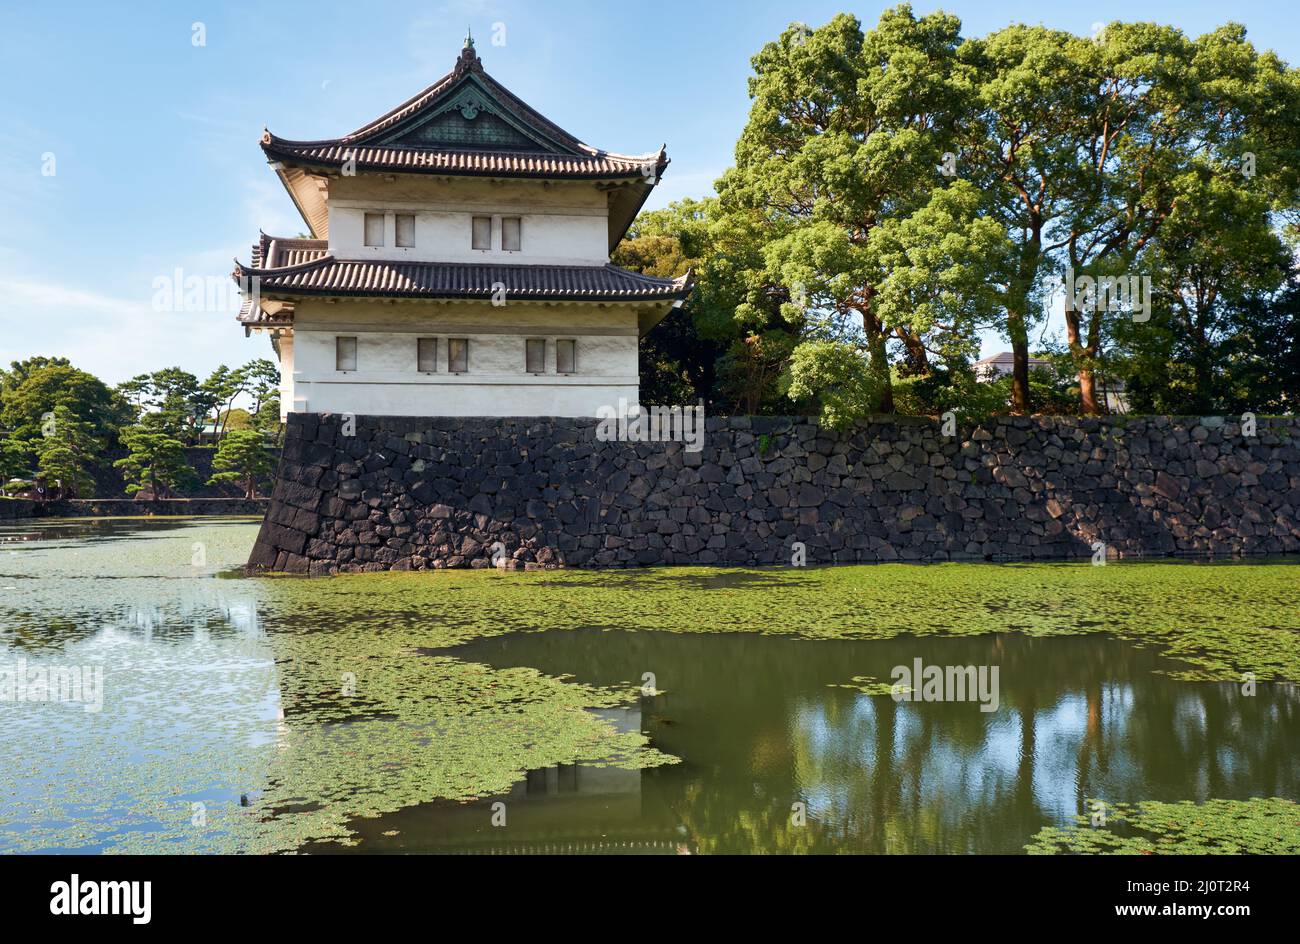 Der Kikyo-bori-Graben ist um den Kaiserpalast von Tokio herum mit Wasserpflanzen überwuchert. Tokio. Japan Stockfoto